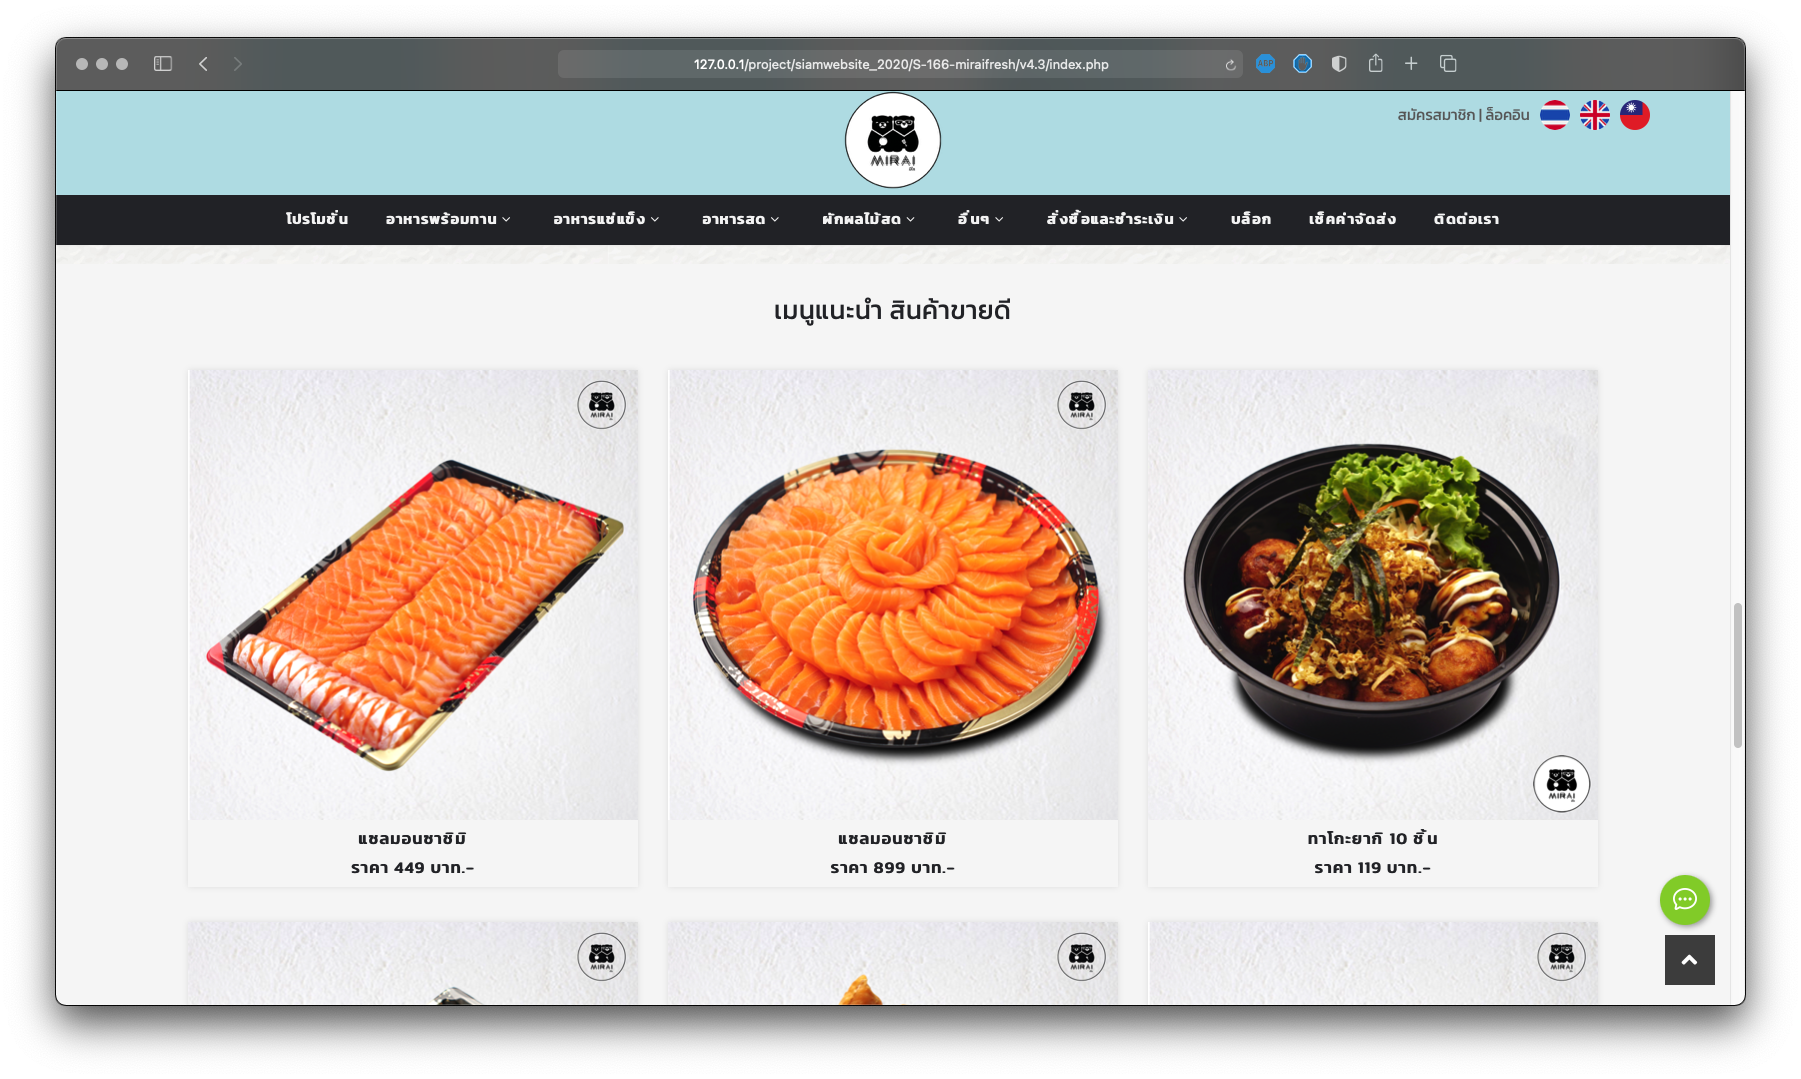 รับทำเว็บไซต์ รับออกแบบเว็บไซต์ เว็บไซต์สำเร็จรูป ตัวอย่างเว็บไซต์ร้านค้าออนไลน์ - อาหารทะเล / อาหารแช่แข็ง TTT-WEBSITE